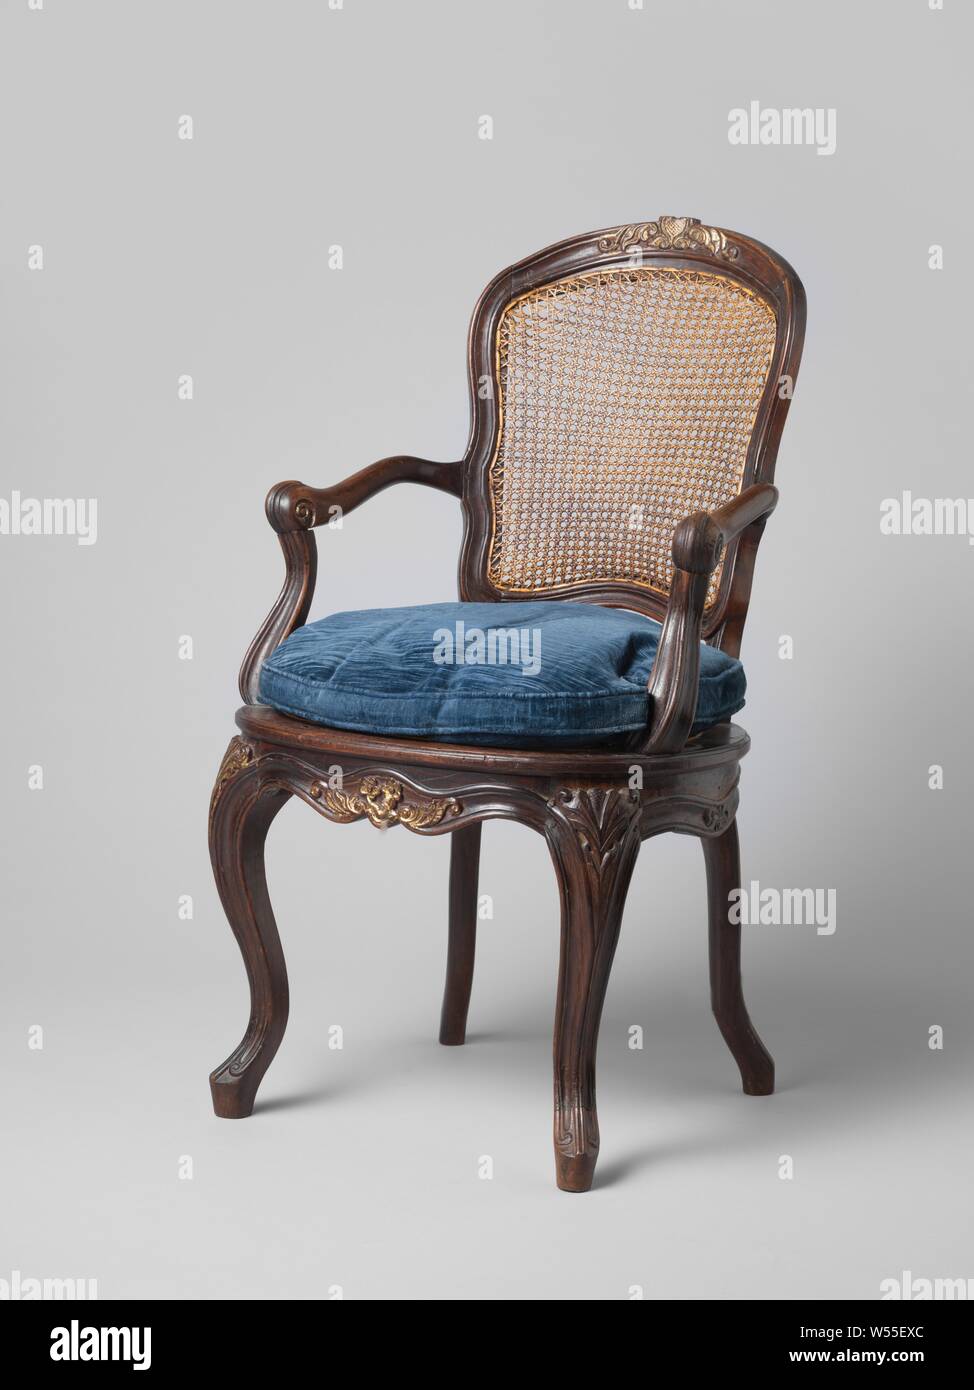 Fauteuil colonial, fauteuil. Siège rembourrés en tissu, de retour avec le  rotin. Une série de 6, anonyme, l'Indonésie, ch. 1700 - c. 1800, velours  tissu (tissu), rotin, h 95,5 cm × 60,5